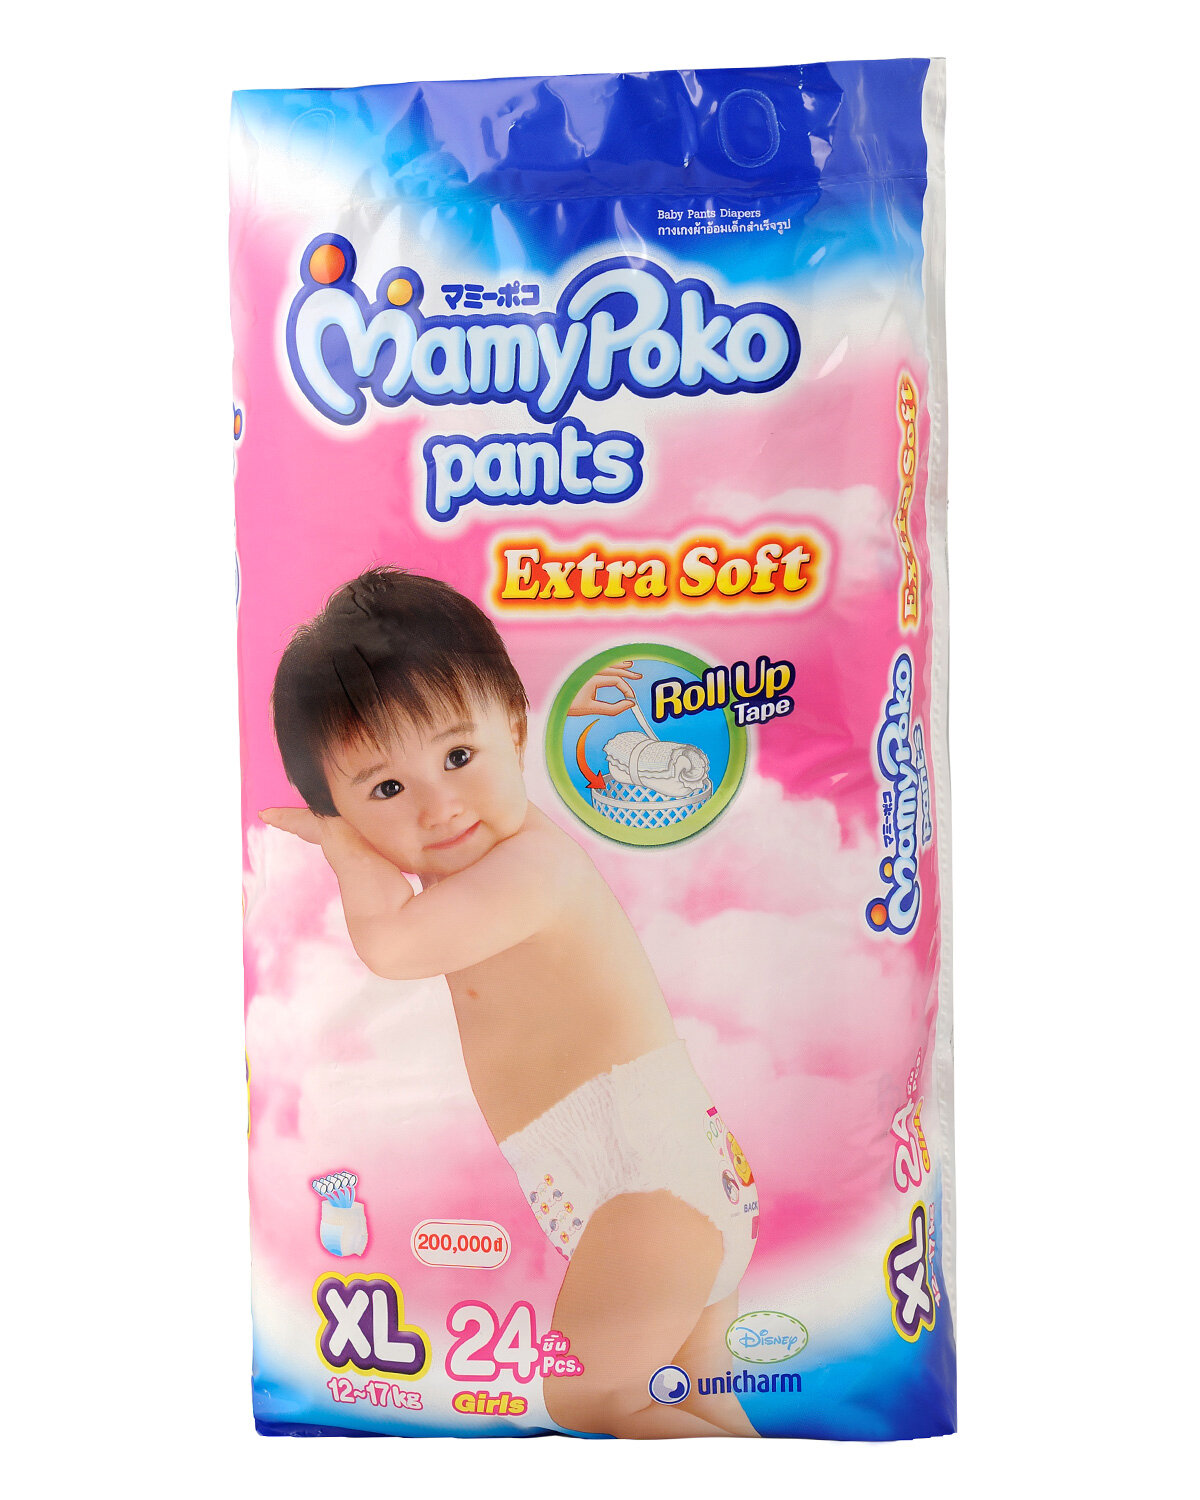 Mamy Poko là có thiết kế dành riêng cho bé trai và bé gái